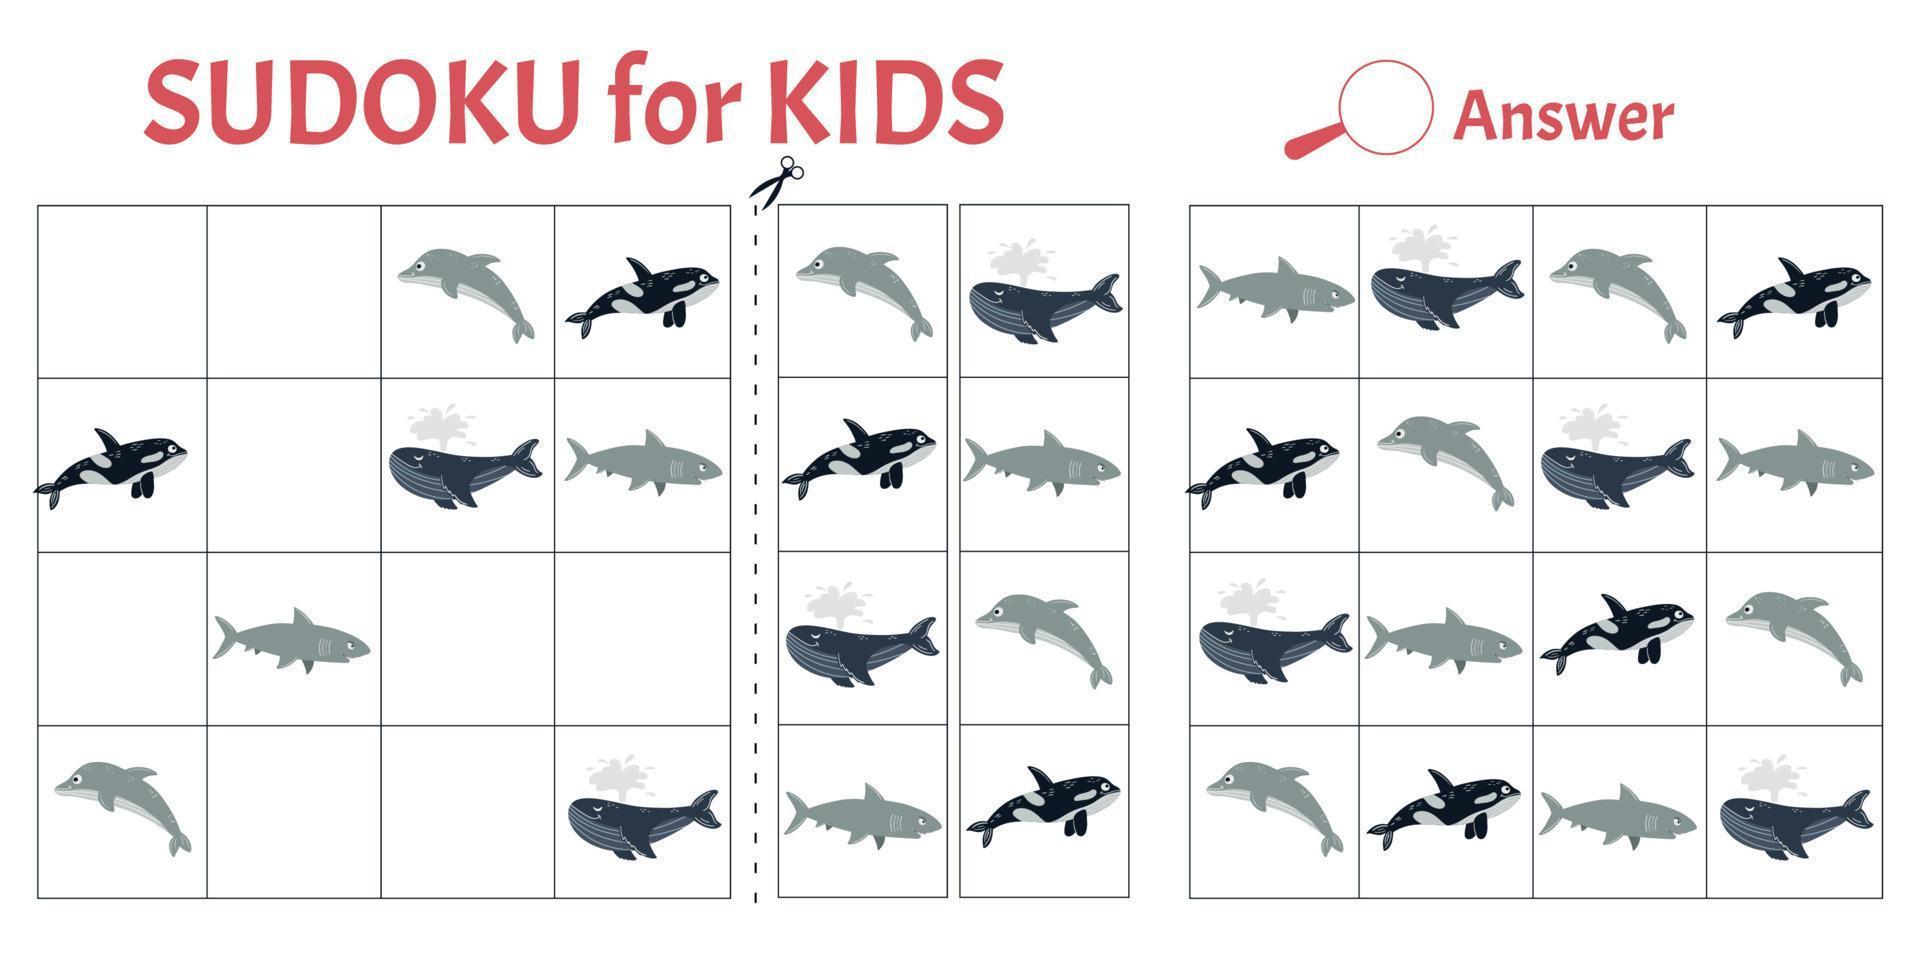 Sudoku-Spiel für Kinder mit Bildern von Meerestieren. Aktivitätsblatt für Kinder. Vektor-Illustration-Cartoon-Stil vektor